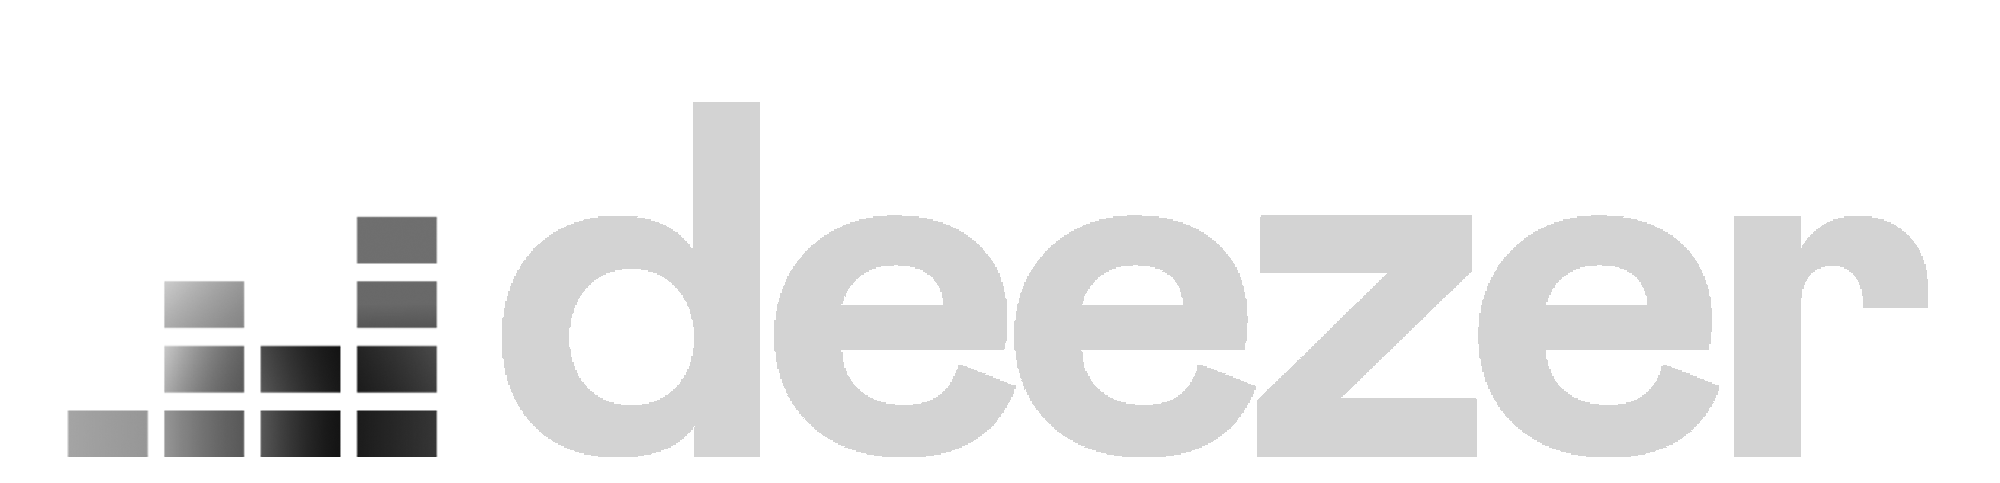 Logo deezer